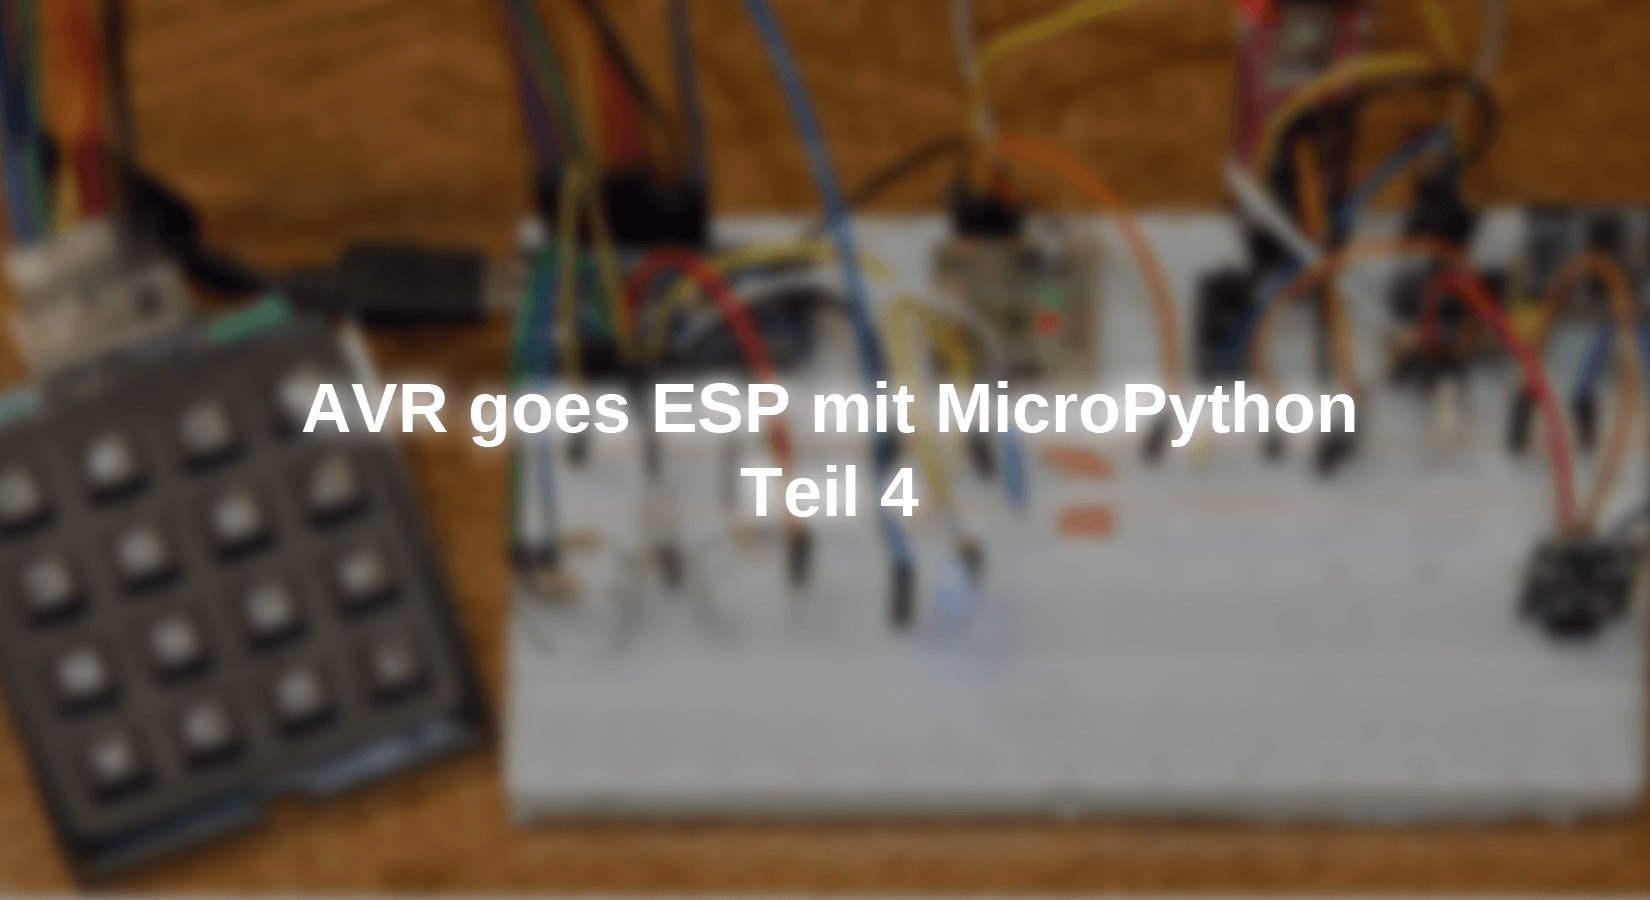 AVR goes ESP mit MicroPython - Teil 4 - AZ-Delivery